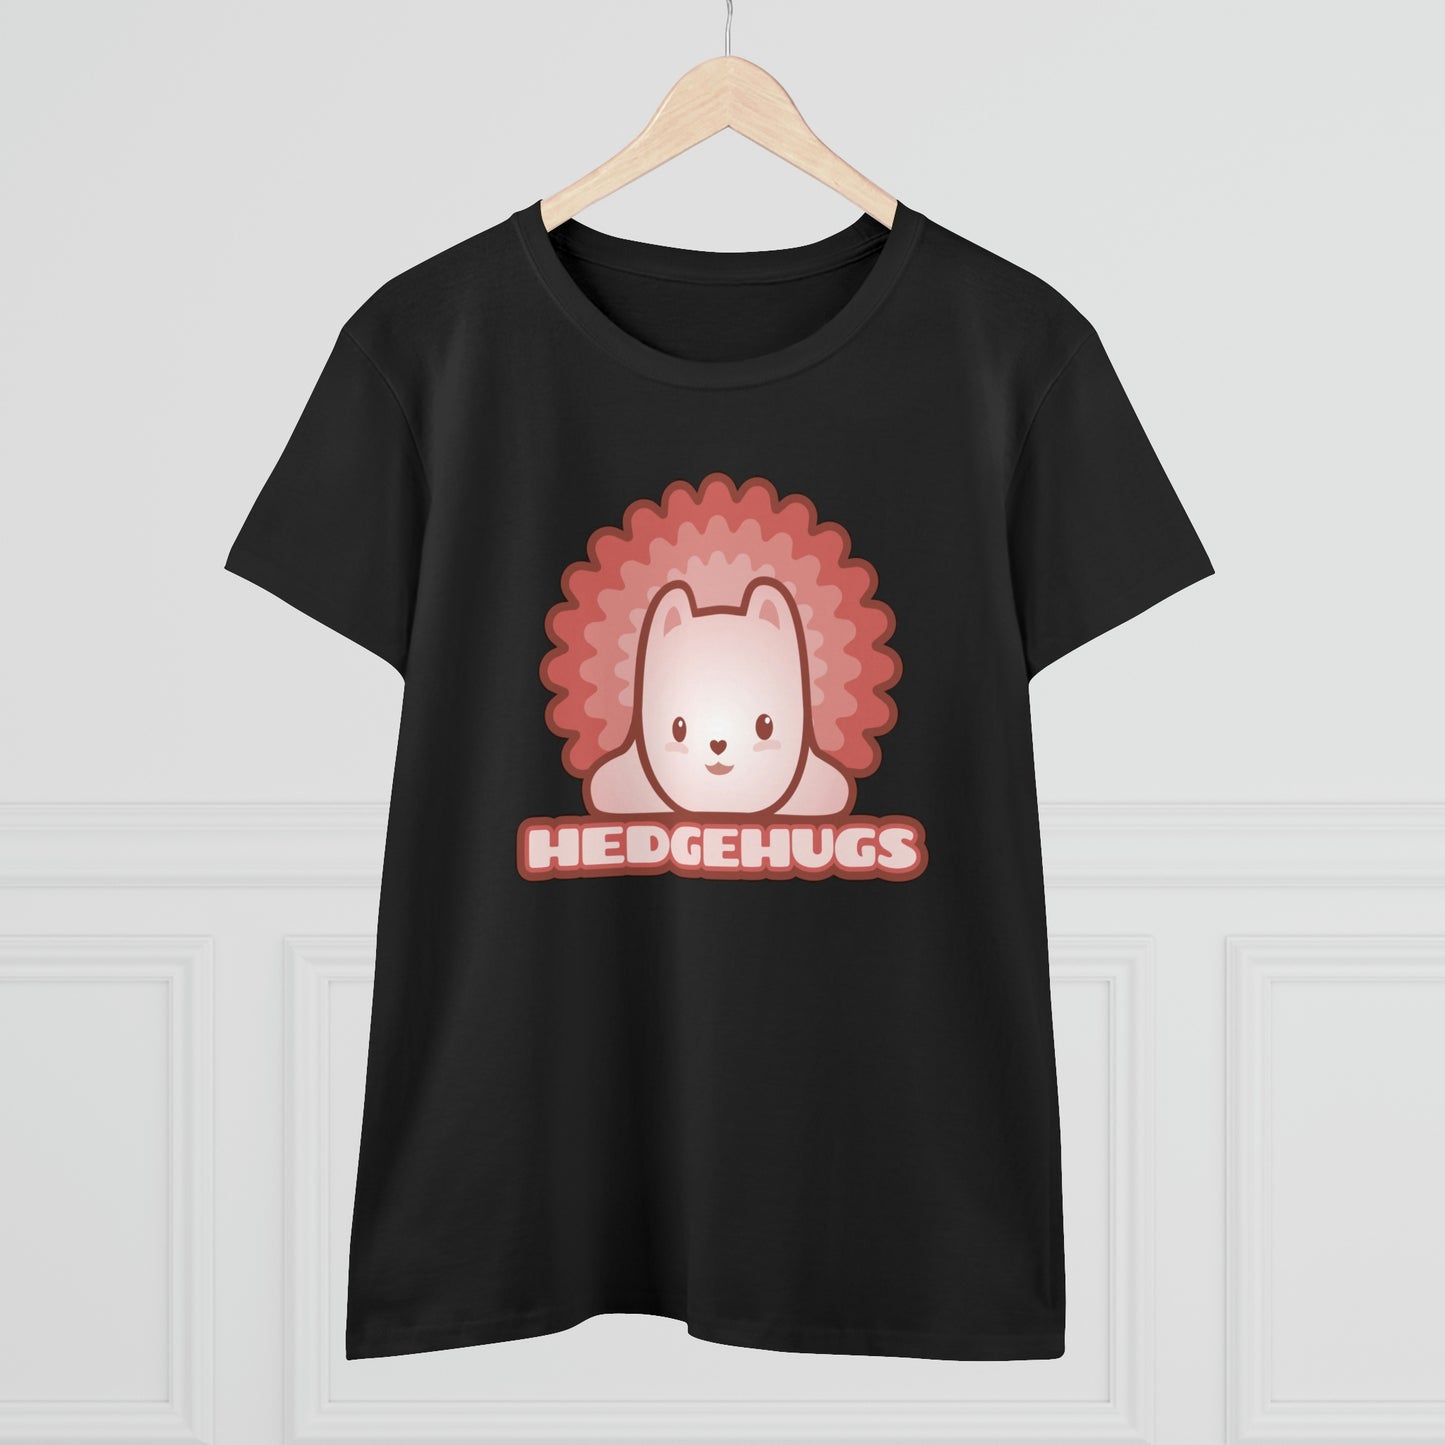 Women's Cute Hedgehog T-shirt Bible Quote in Kawaii Style